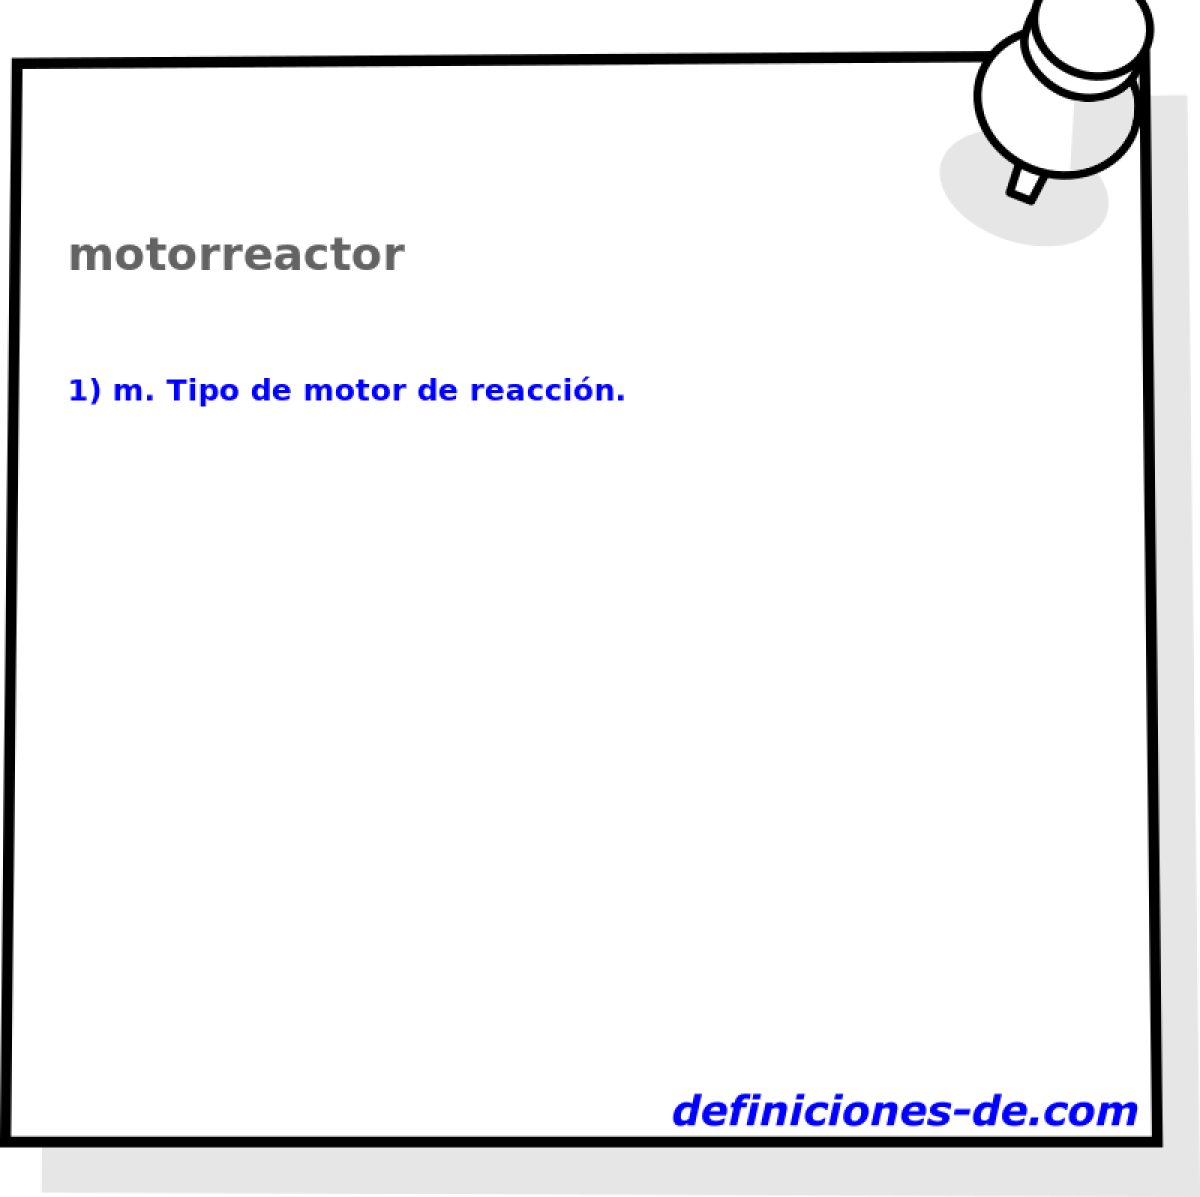 motorreactor 